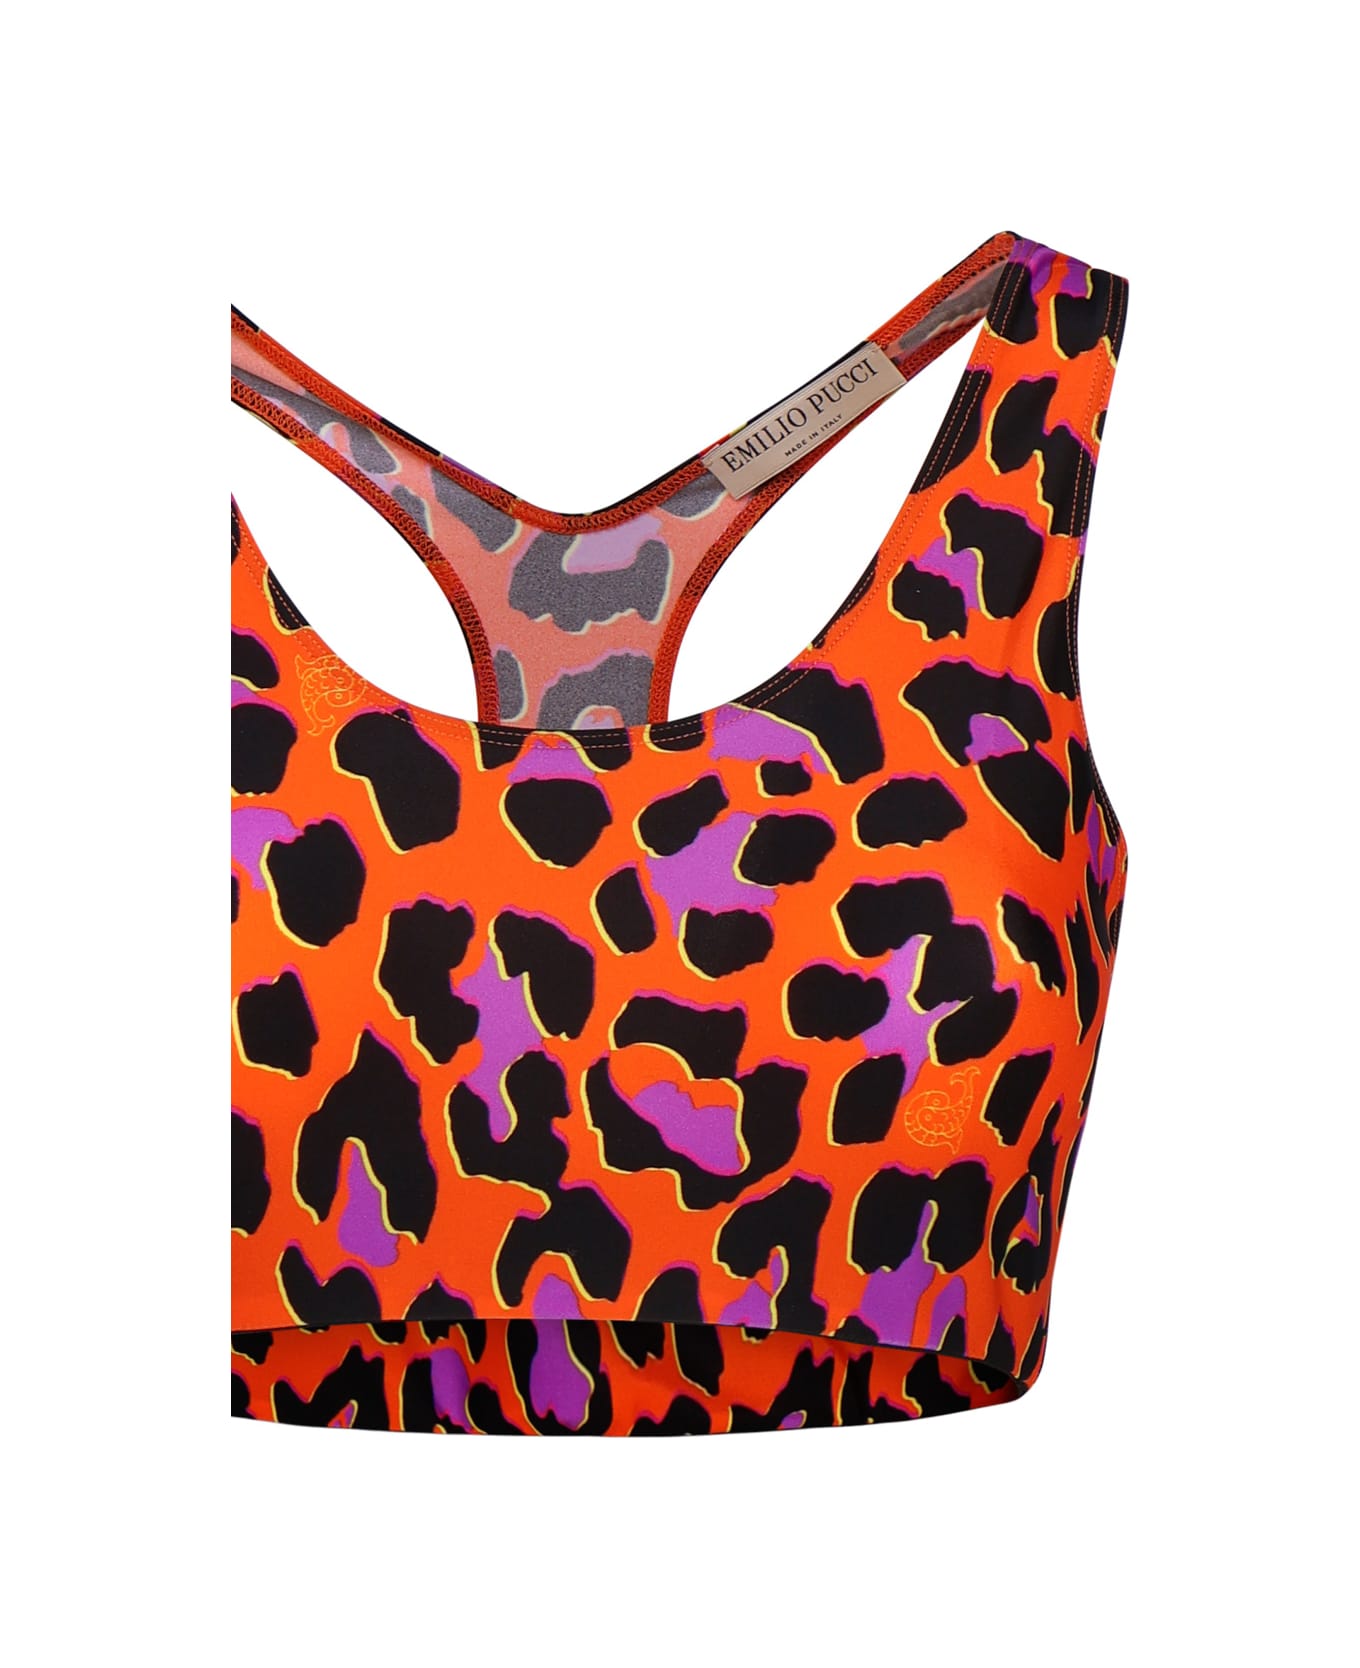 Pucci Leopard Print Crop Top - Arancio